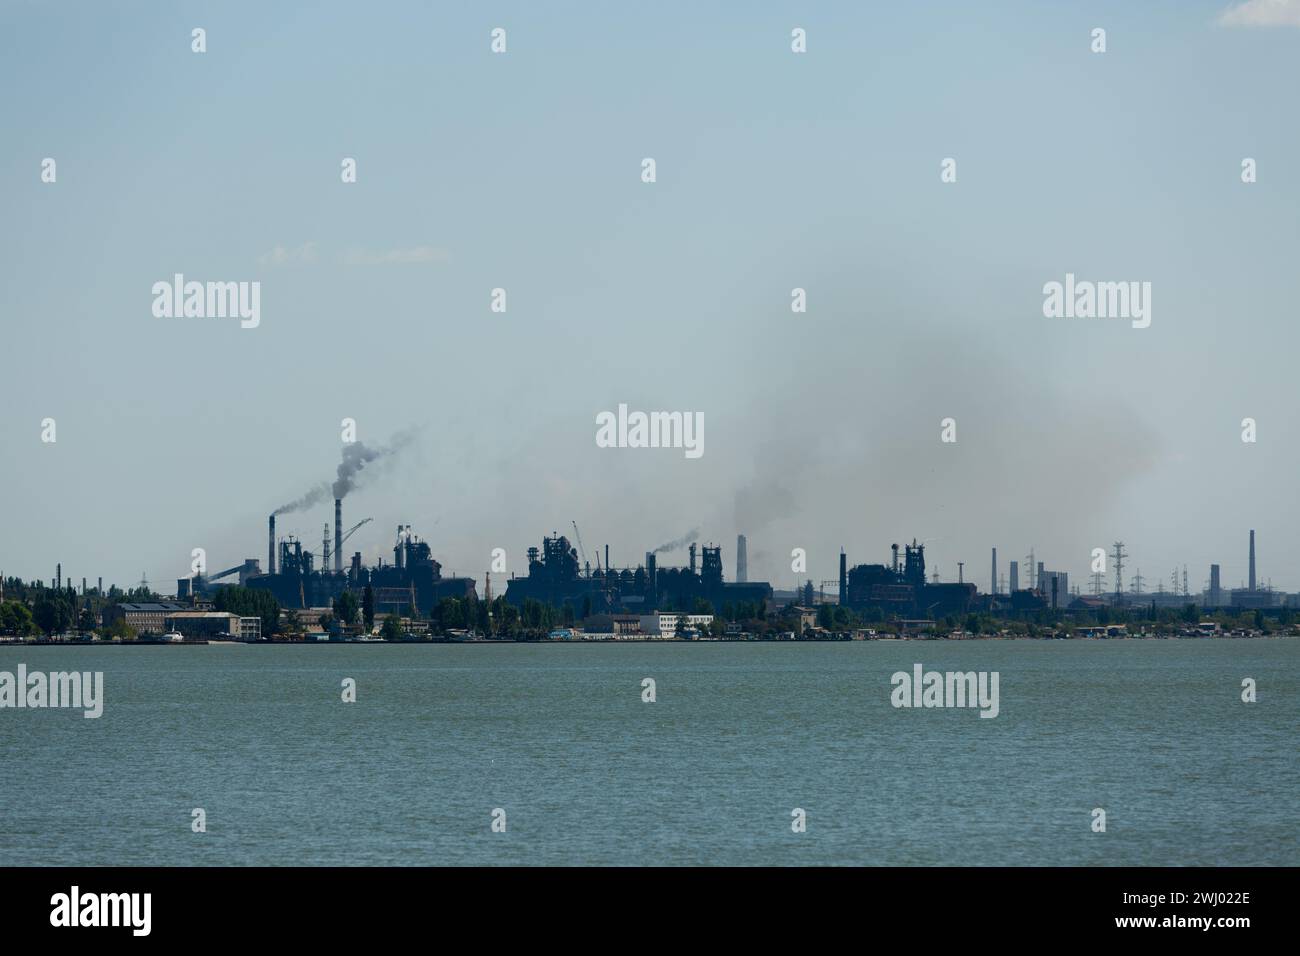 Skyline industriale dominato dalle emissioni degli impianti metallurgici, fumo che si disperde contro il cielo, simboleggia i problemi di inquinamento ambientale, con l'acqua in primo piano. Foto Stock